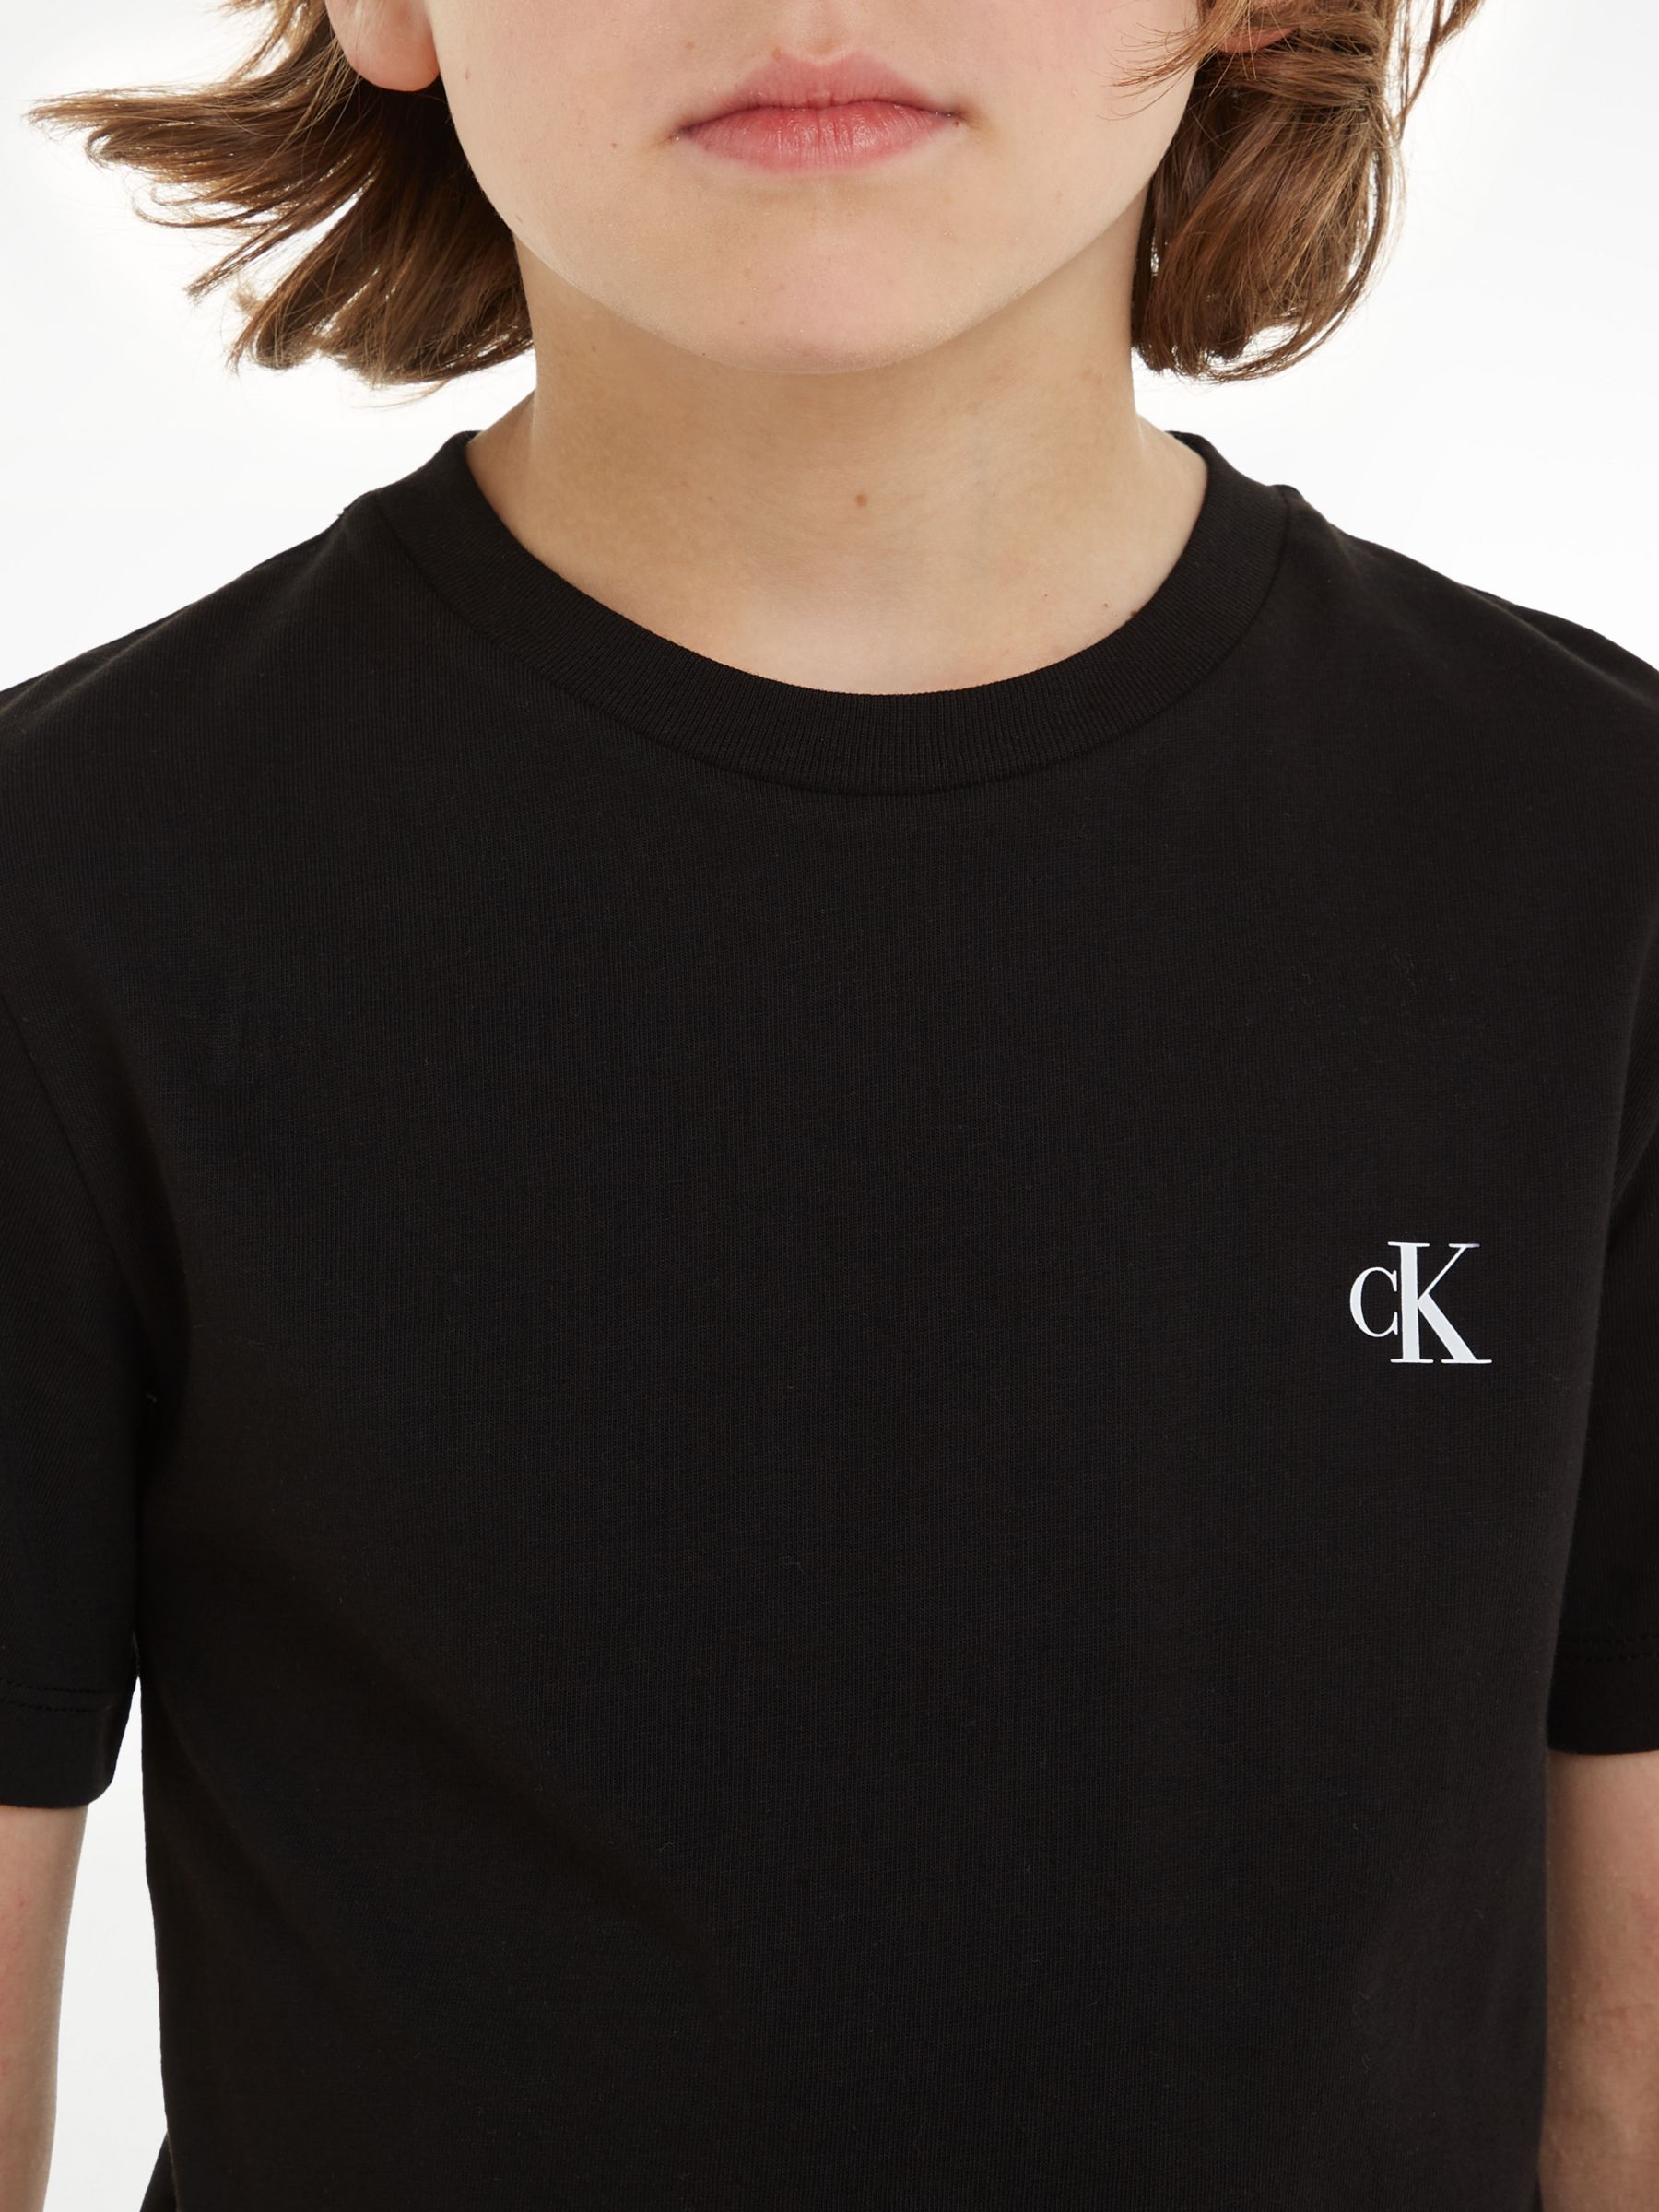 Calvin Klein Kids\' Cotton Monogram Short Sleeve T-Shirts, Pack of 2, Keepsake  Blue/Ck Black at John Lewis & Partners